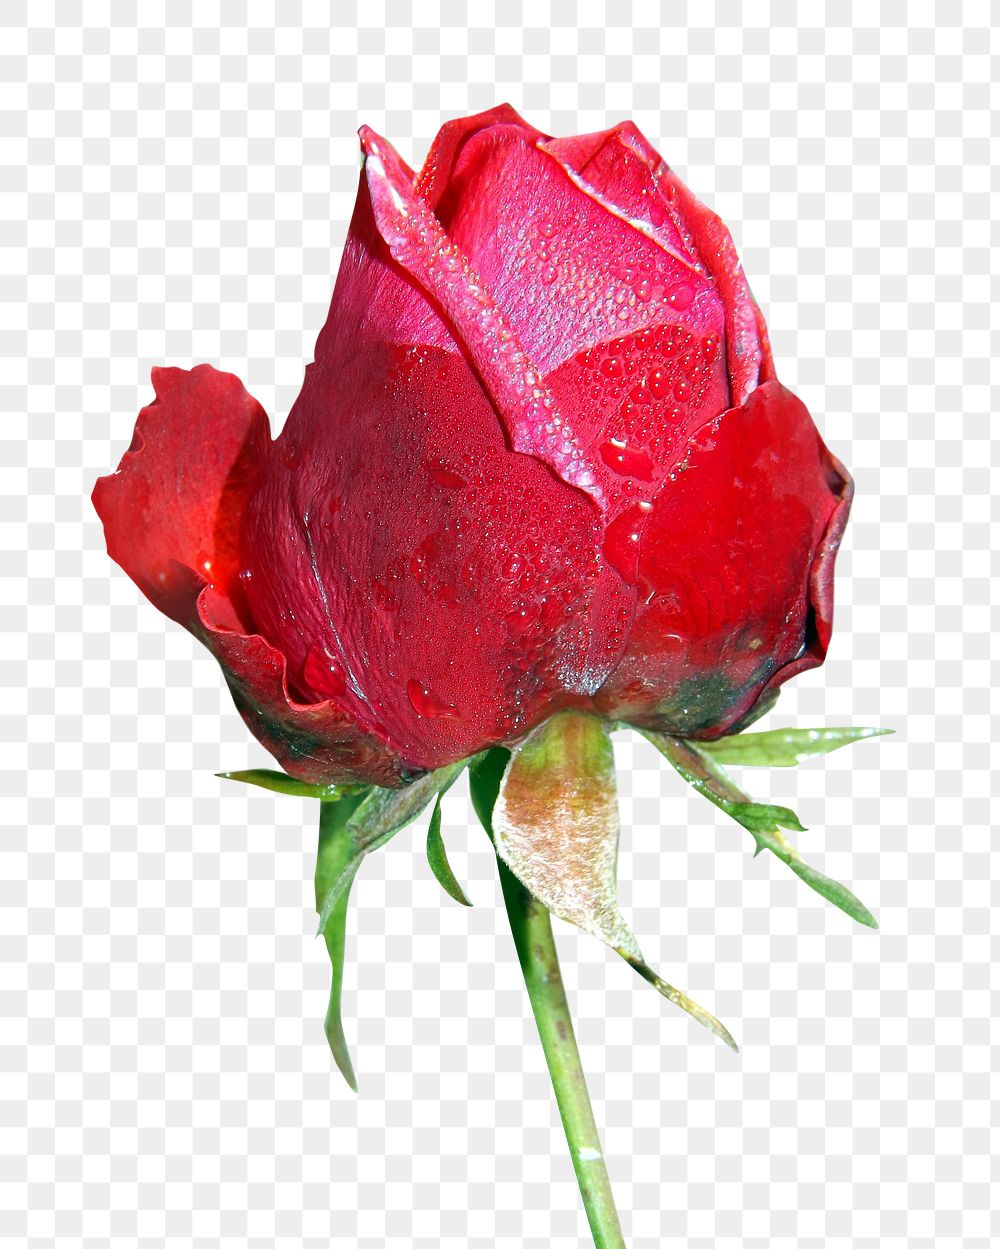 Red rose flower png sticker, transparent background